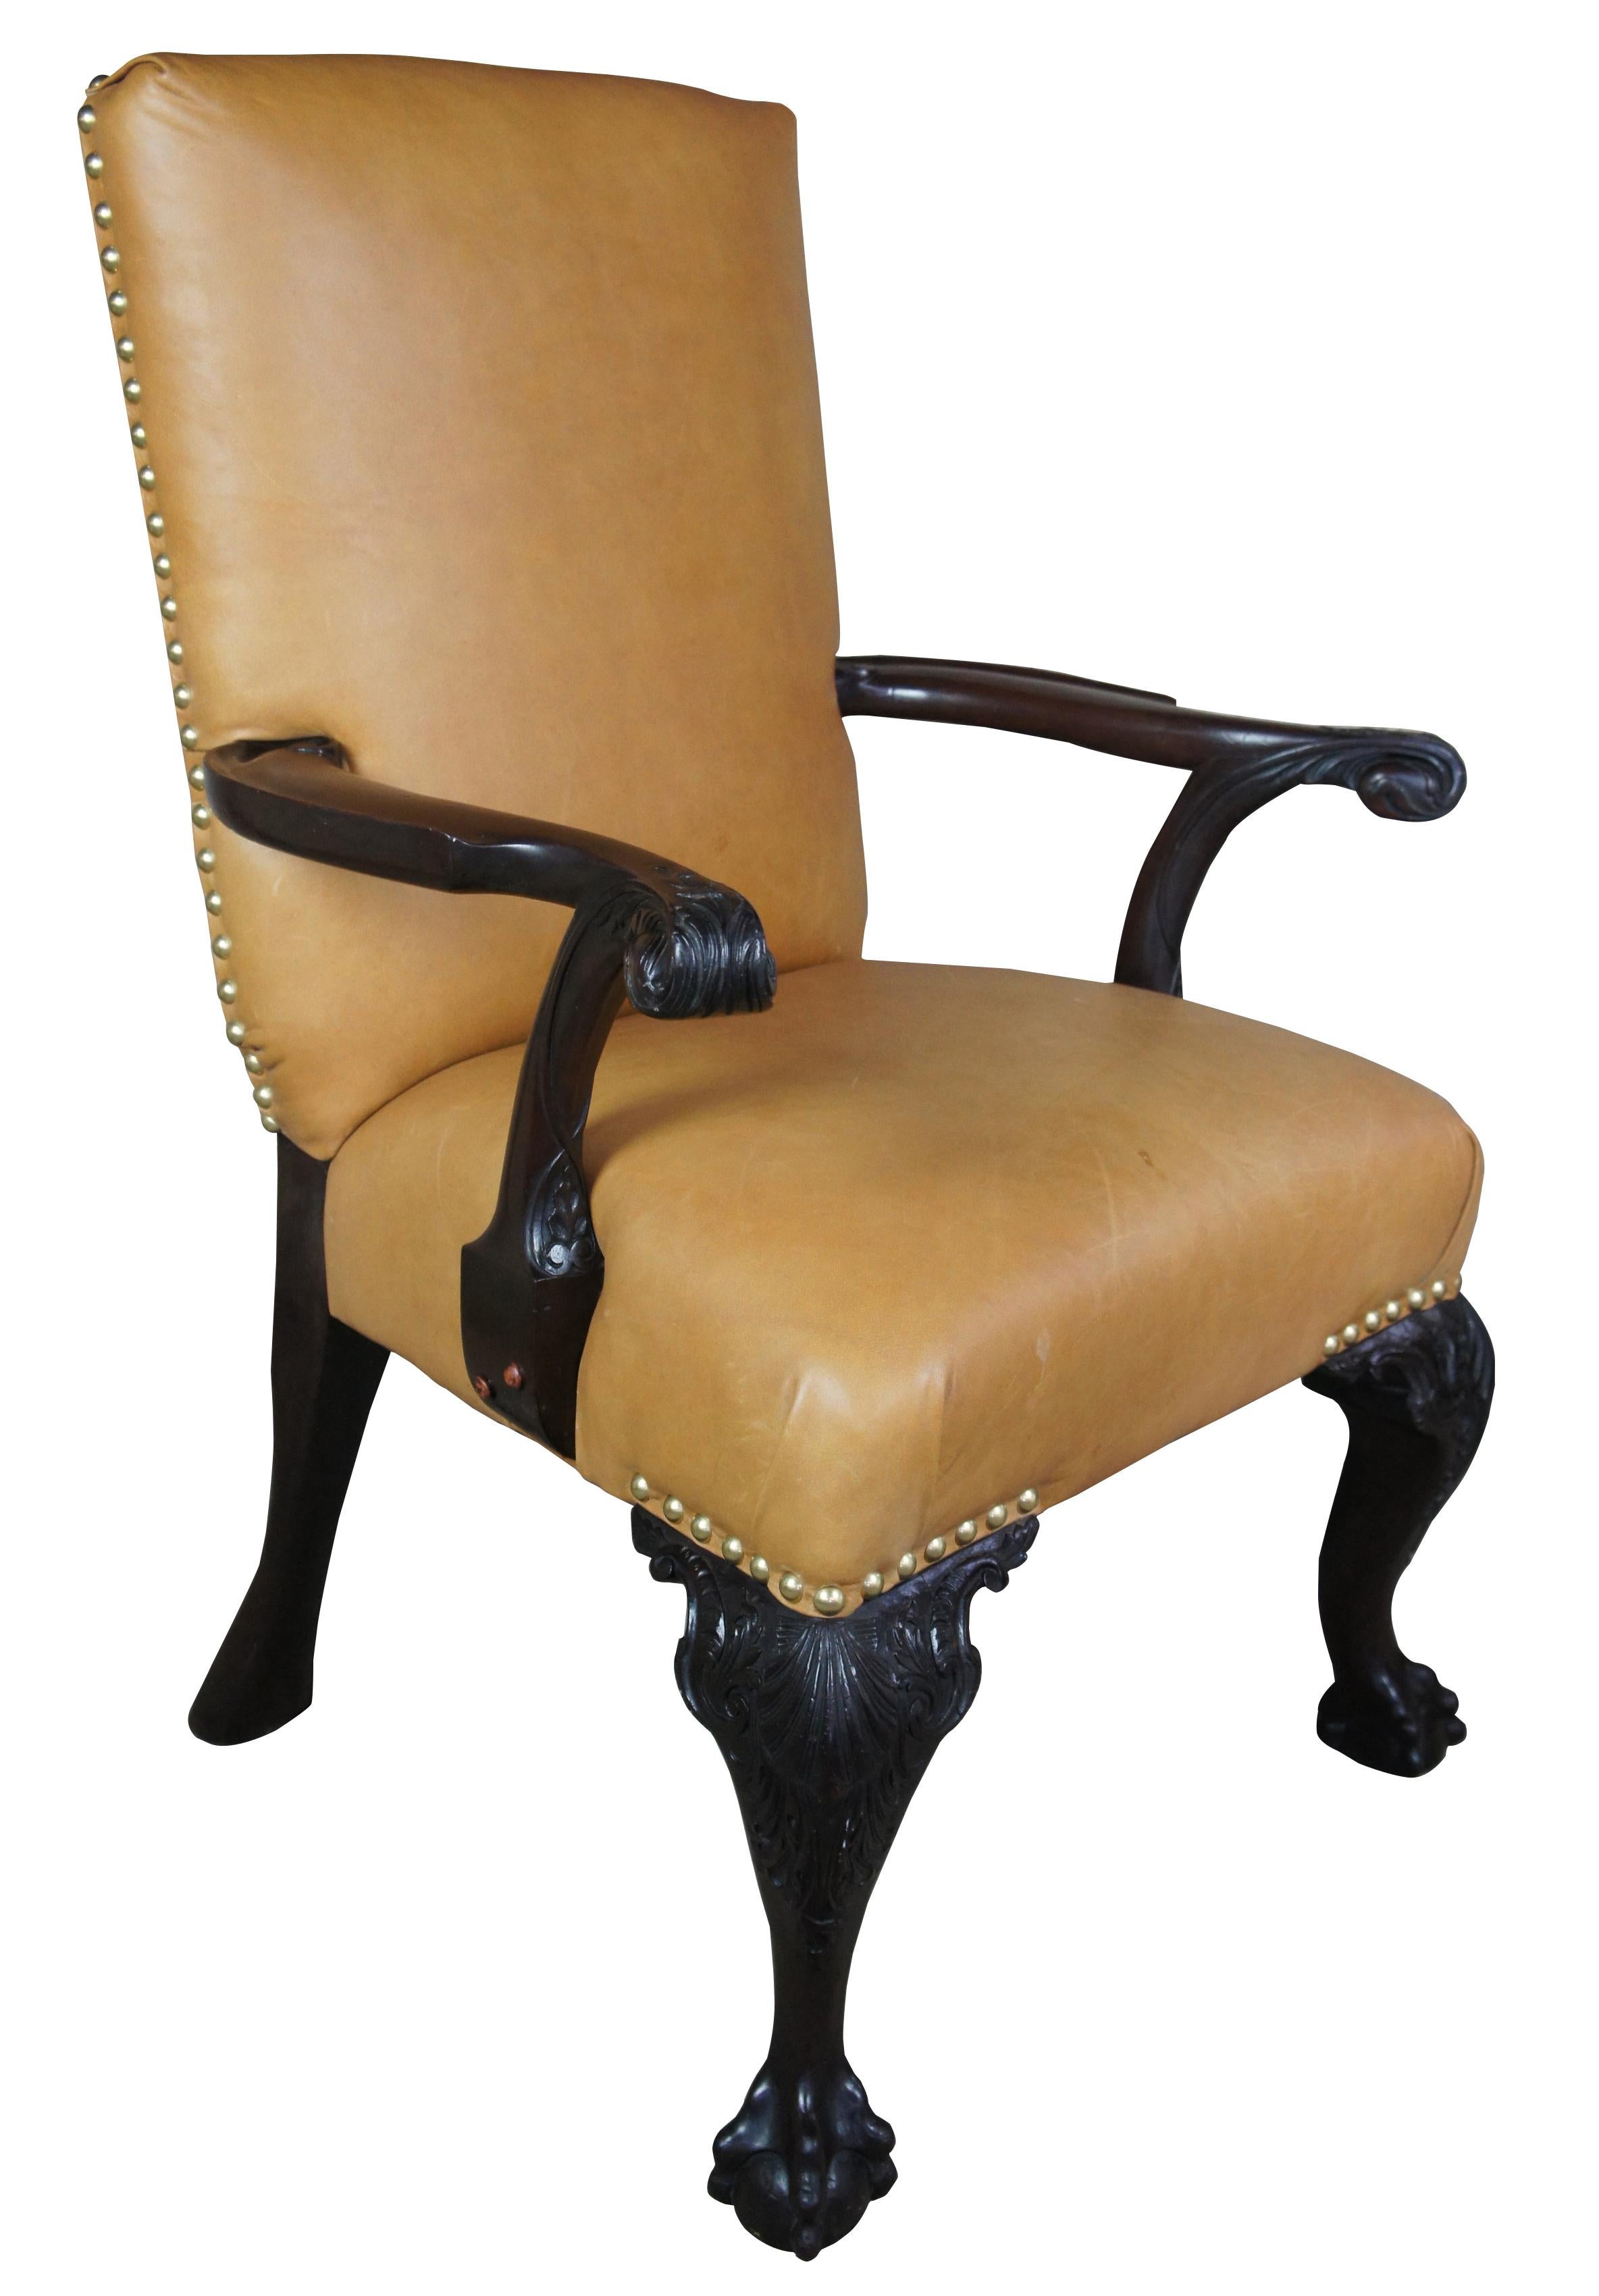 Antike 19. Jahrhundert Englisch Chippendale Sessel geschnitzt Mahagoni Leder Kugel Klaue

Ein schöner schwerer englischer Sessel im Chippendale-Stil. Hergestellt aus Mahagoni mit hellbraunem Leder und Nagelkopfverzierung. Schwer geschnitzt mit